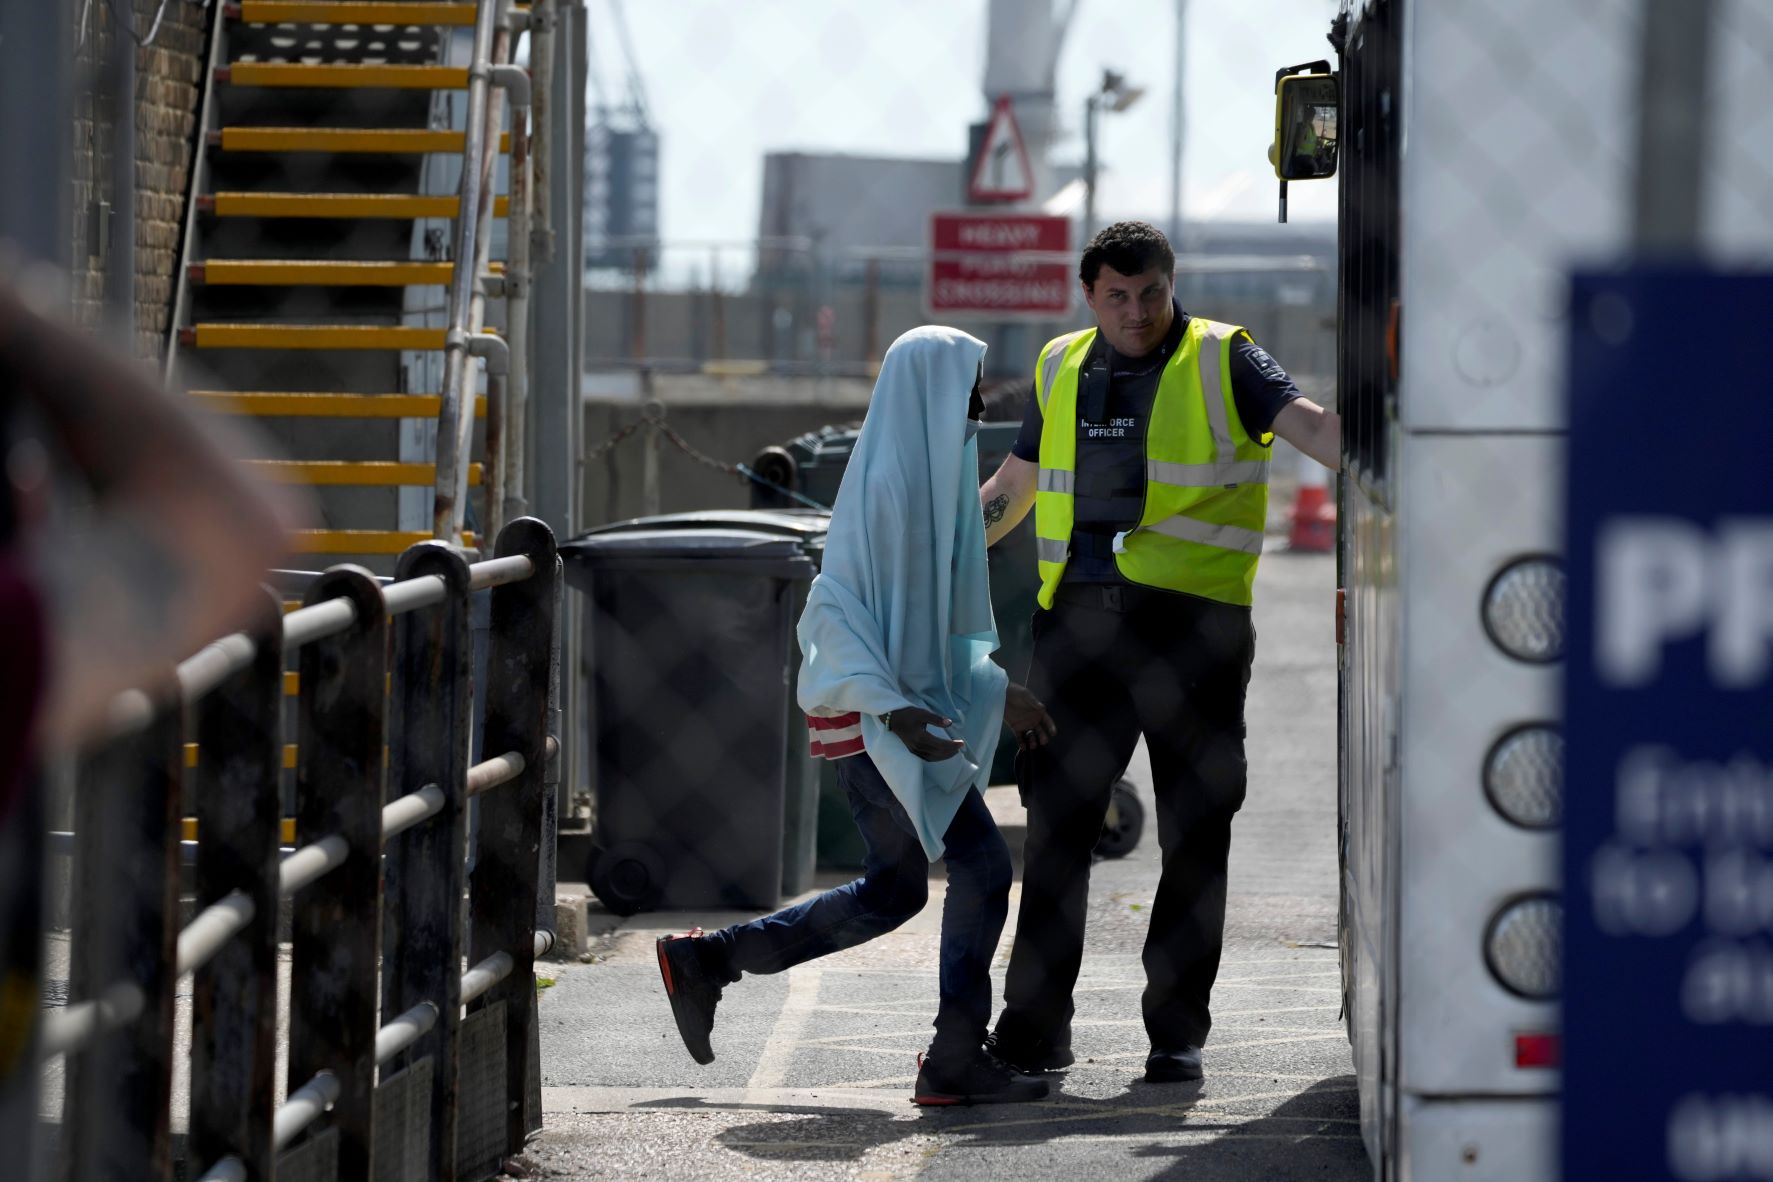 Ηνωμένο Βασίλειο: Διαδικασίες εξπρές για τις υποθέσεις ασύλου